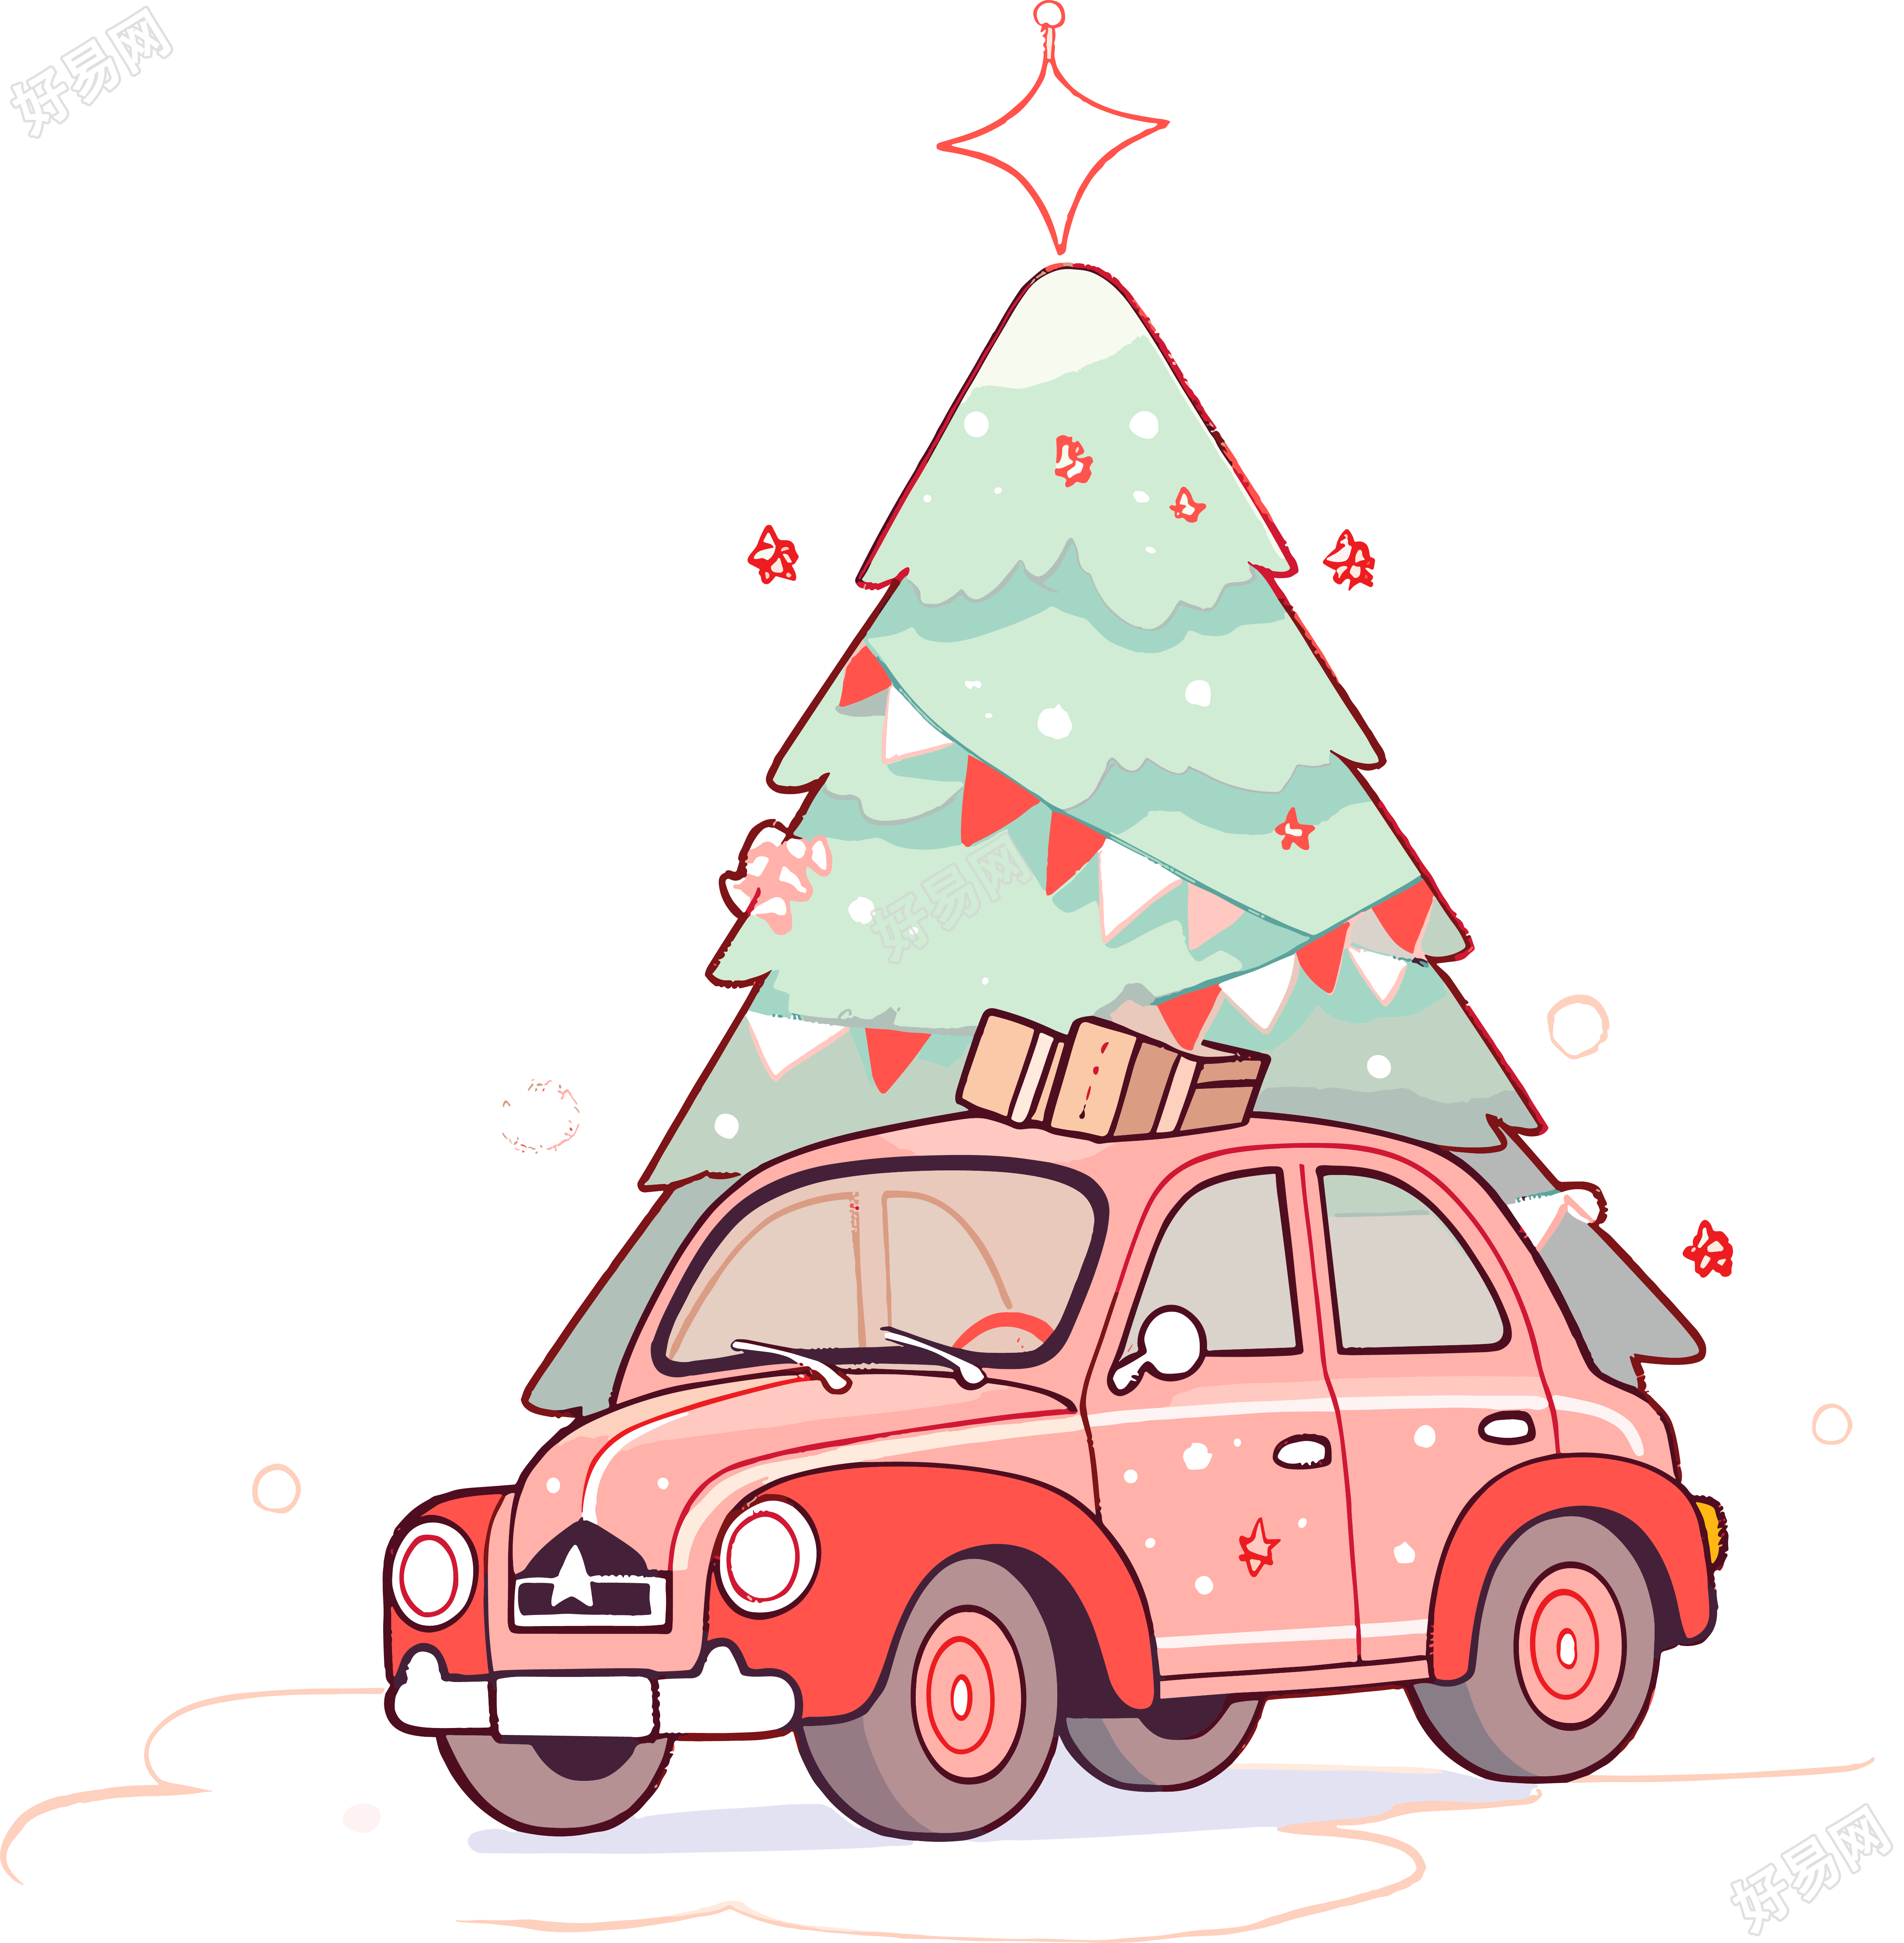 圣诞树和车高清图形素材